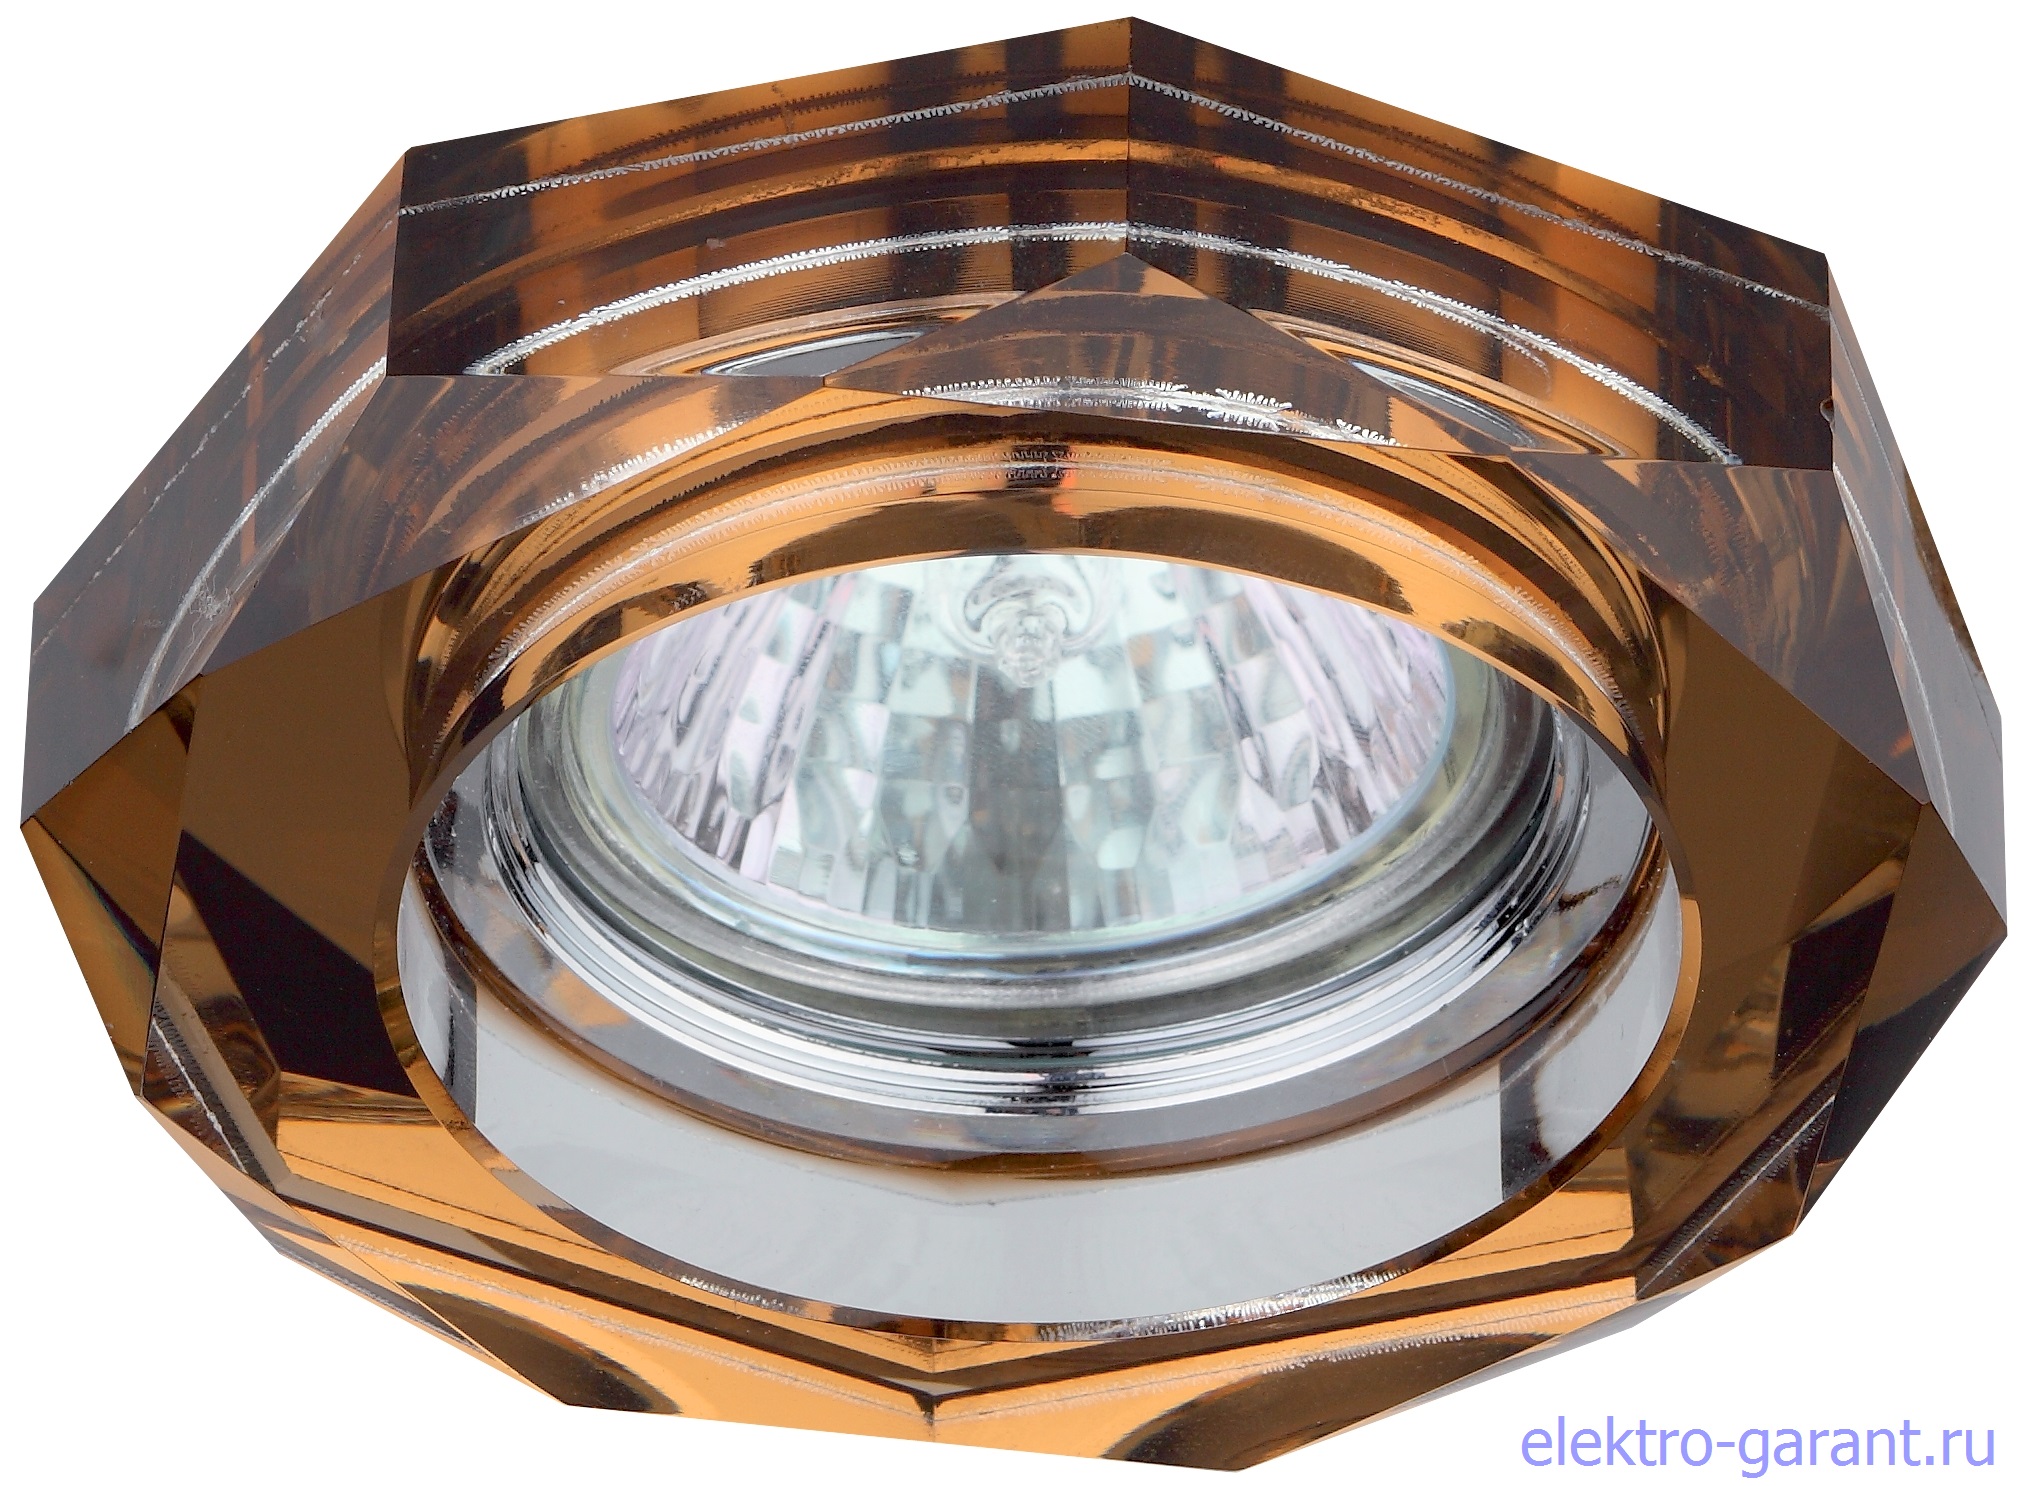 DK6 CH/T ЭРА декор стекло обьемный многогранник MR16, 50W, хром/янтарь